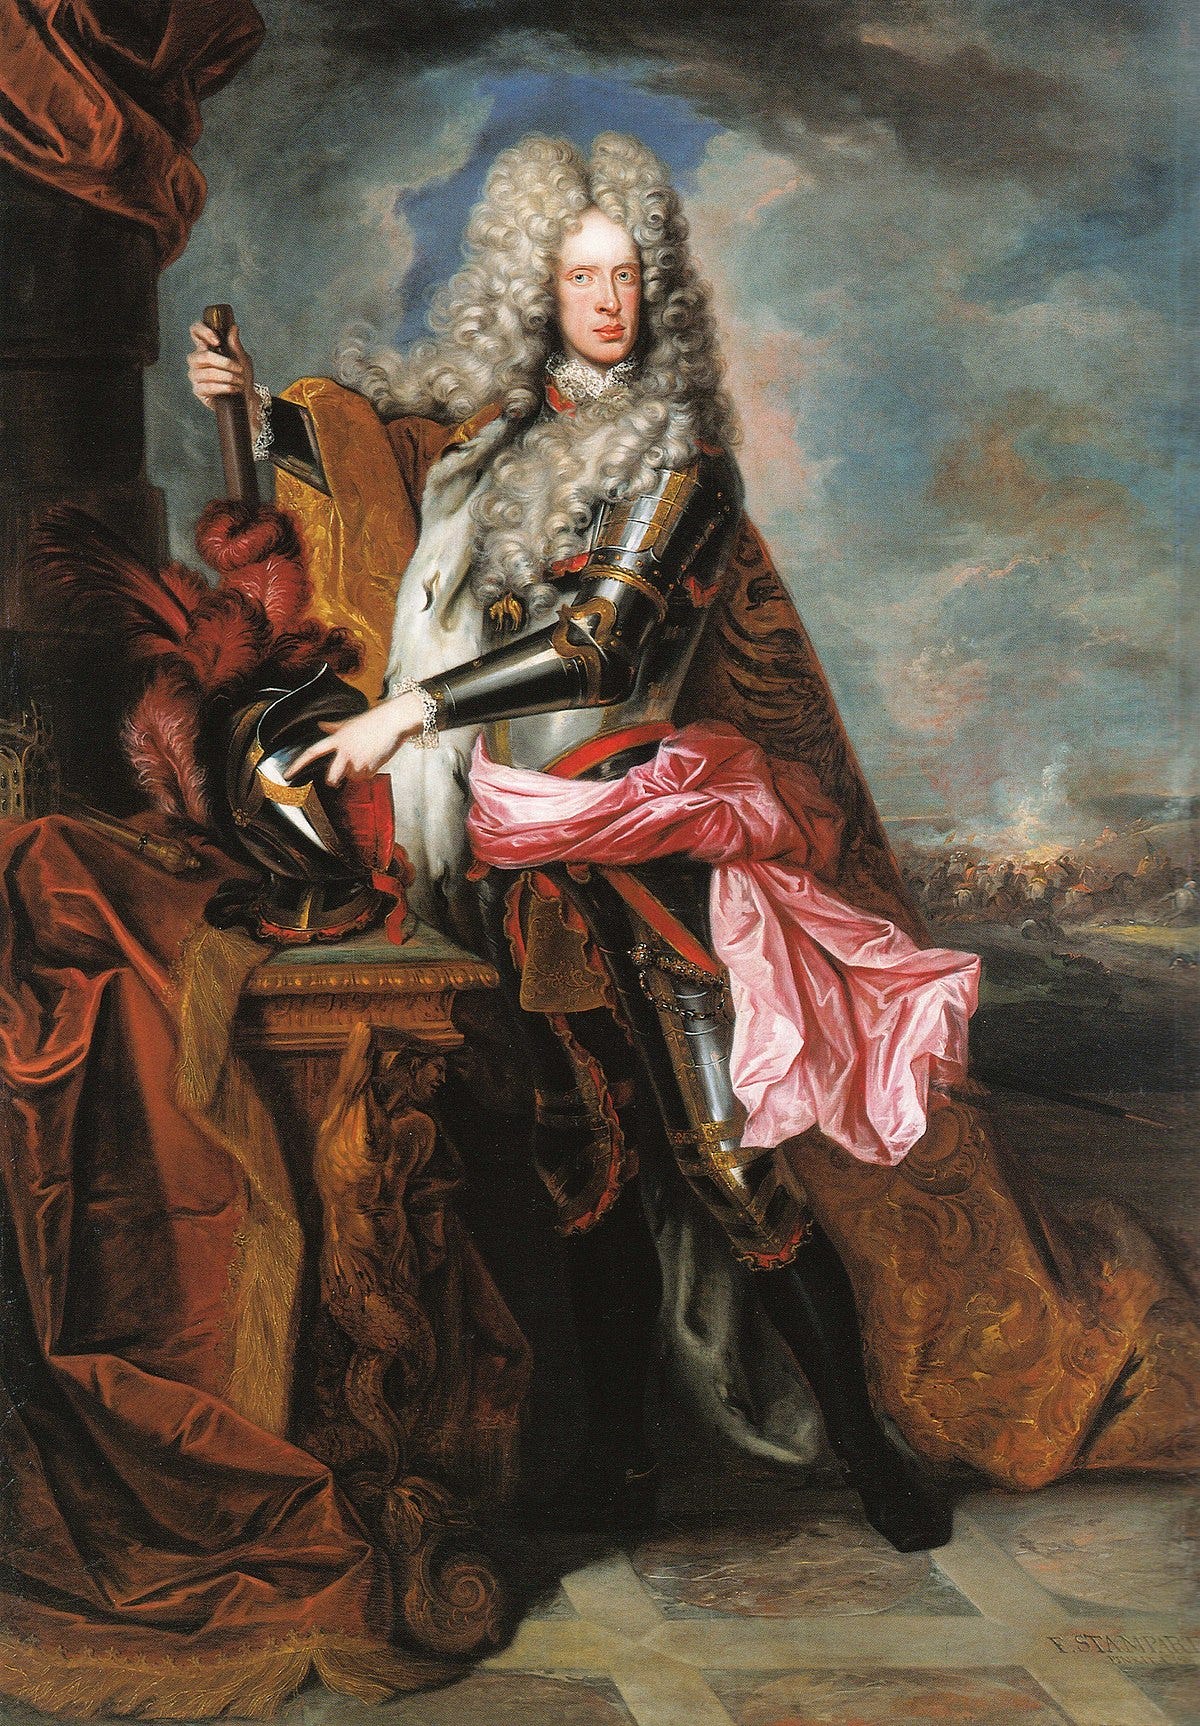 Joseph I, Holy Roman Emperor - Wikipedia